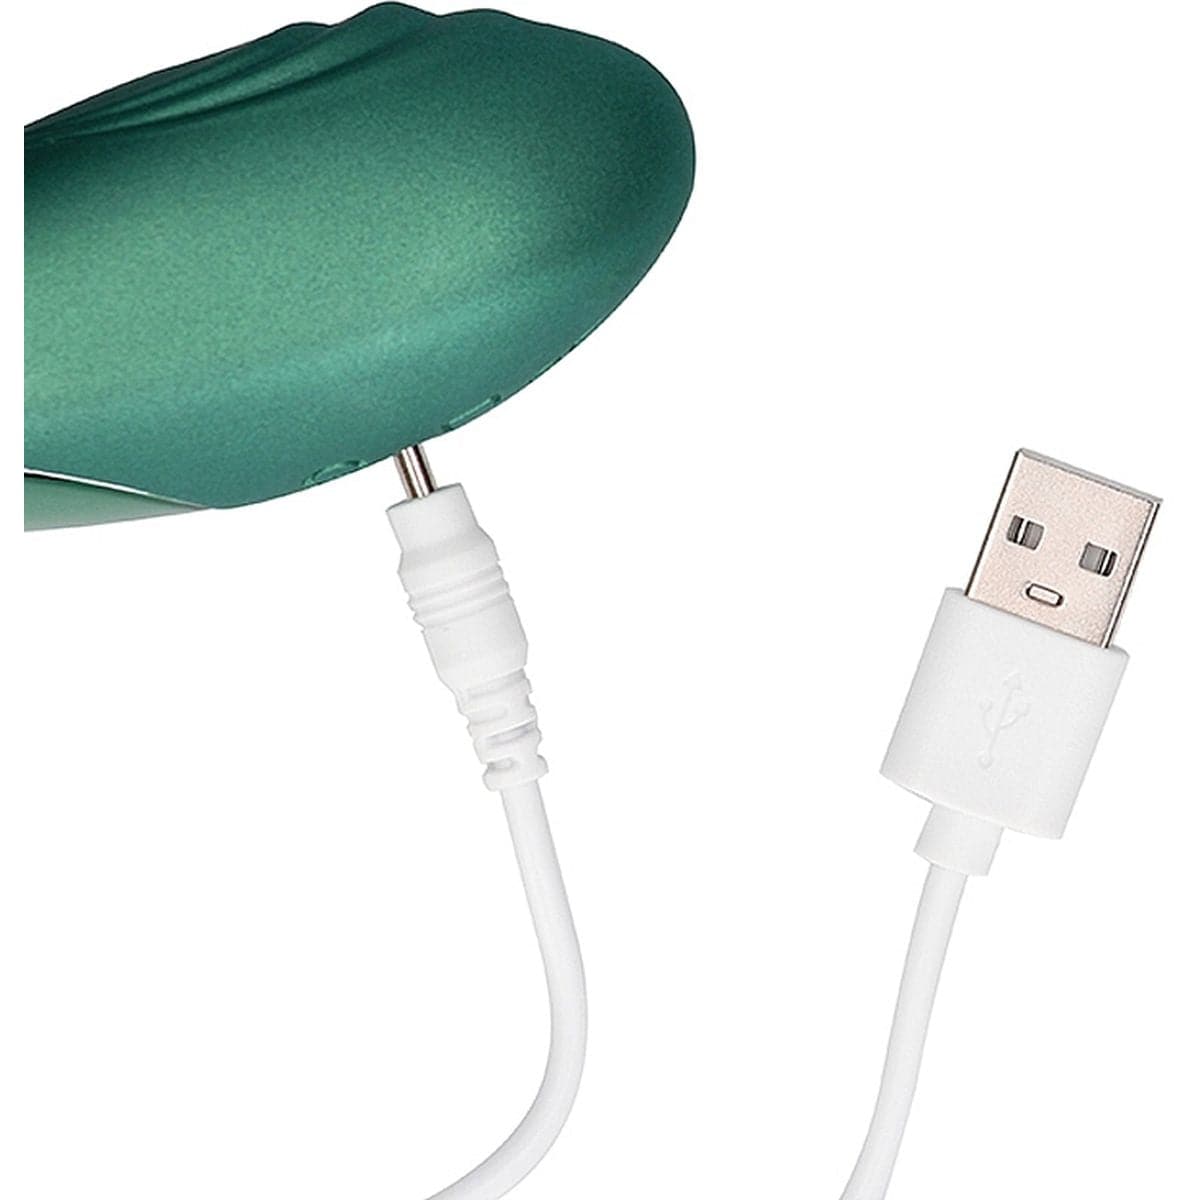 Estimulador Bent Verde USB com Controlo Remoto, 10vibrações